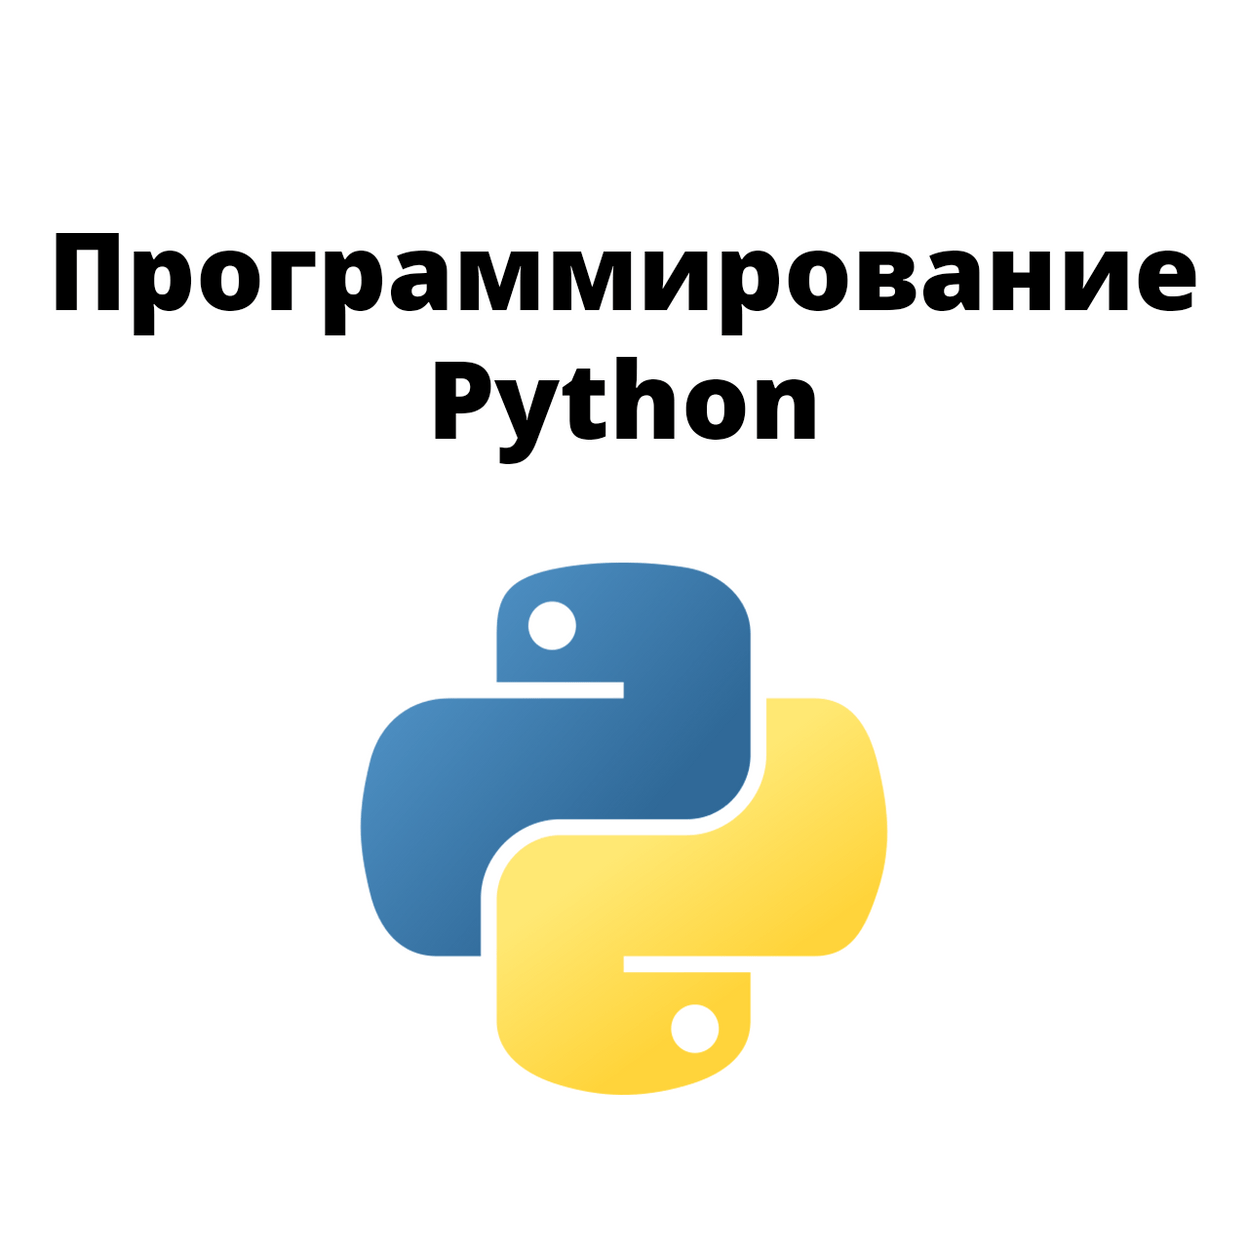 Купить Программирование на Python